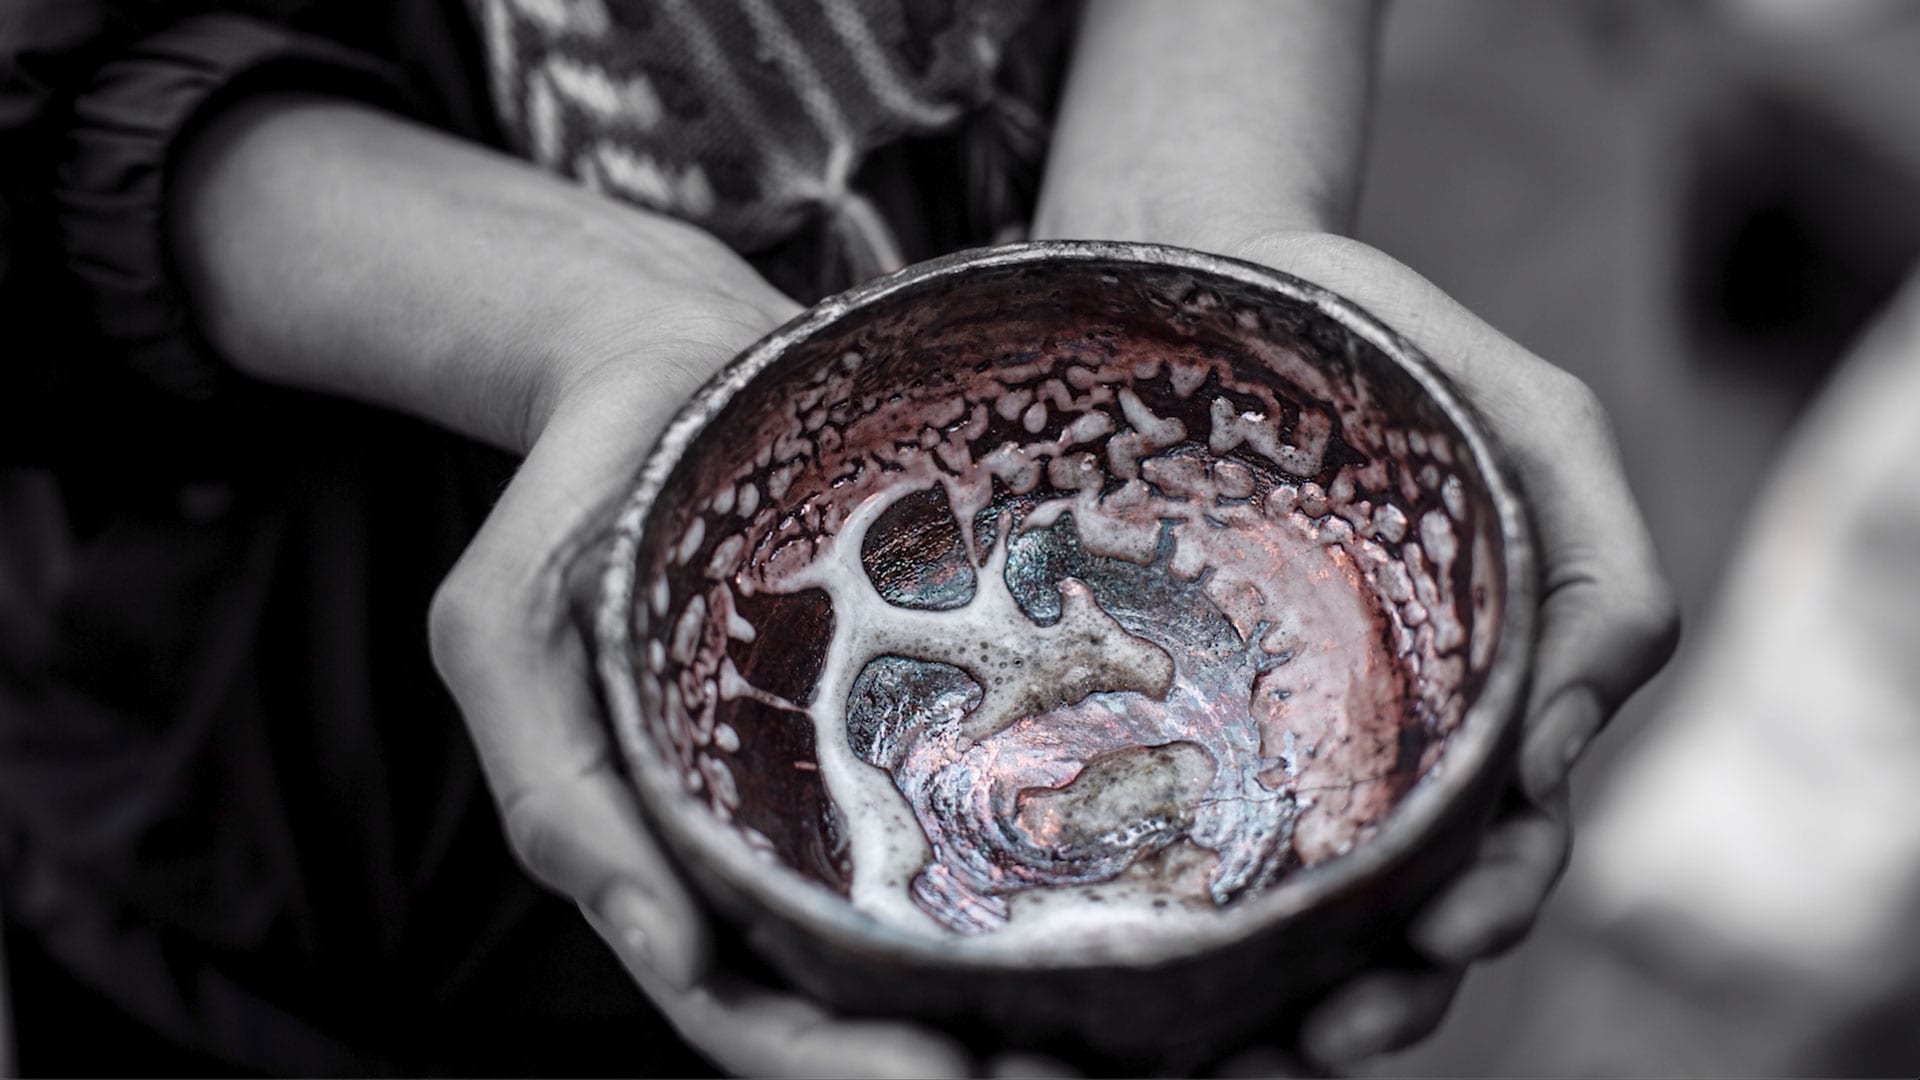 Rakú, quema de cerámica en la técnica tradicional oriental